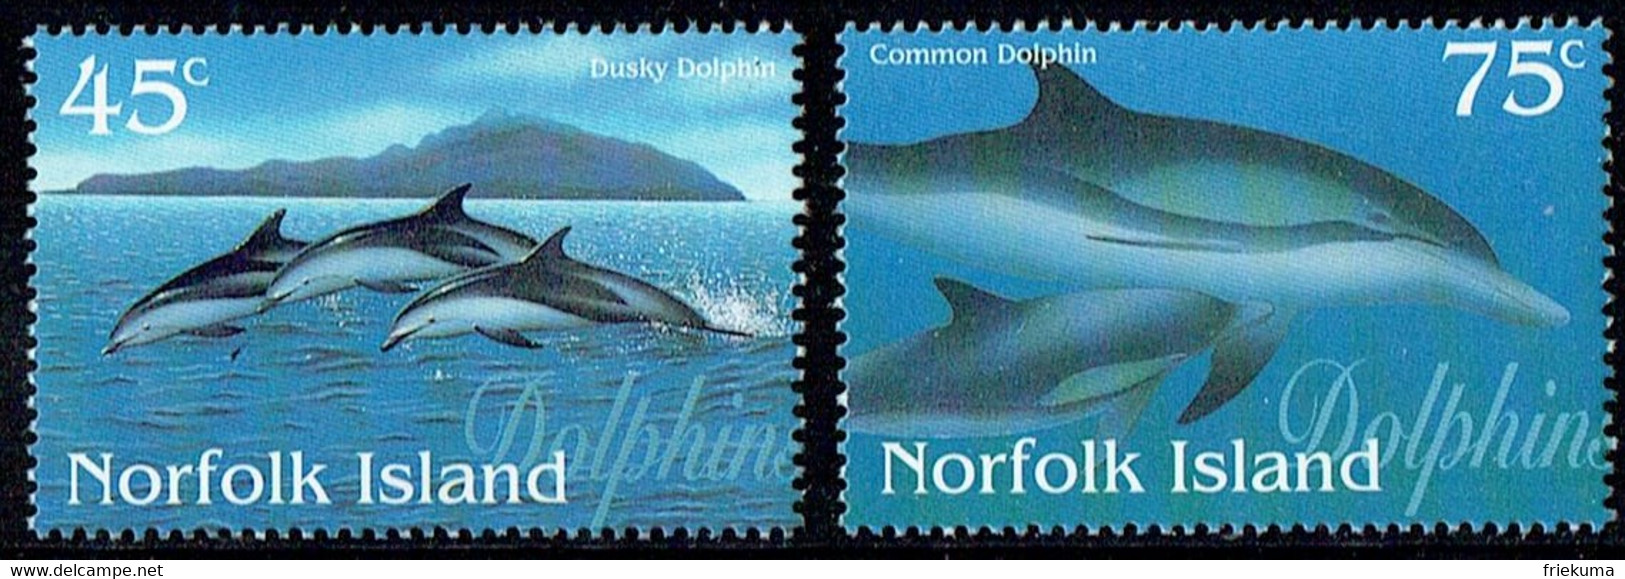 Dunkler Delphin